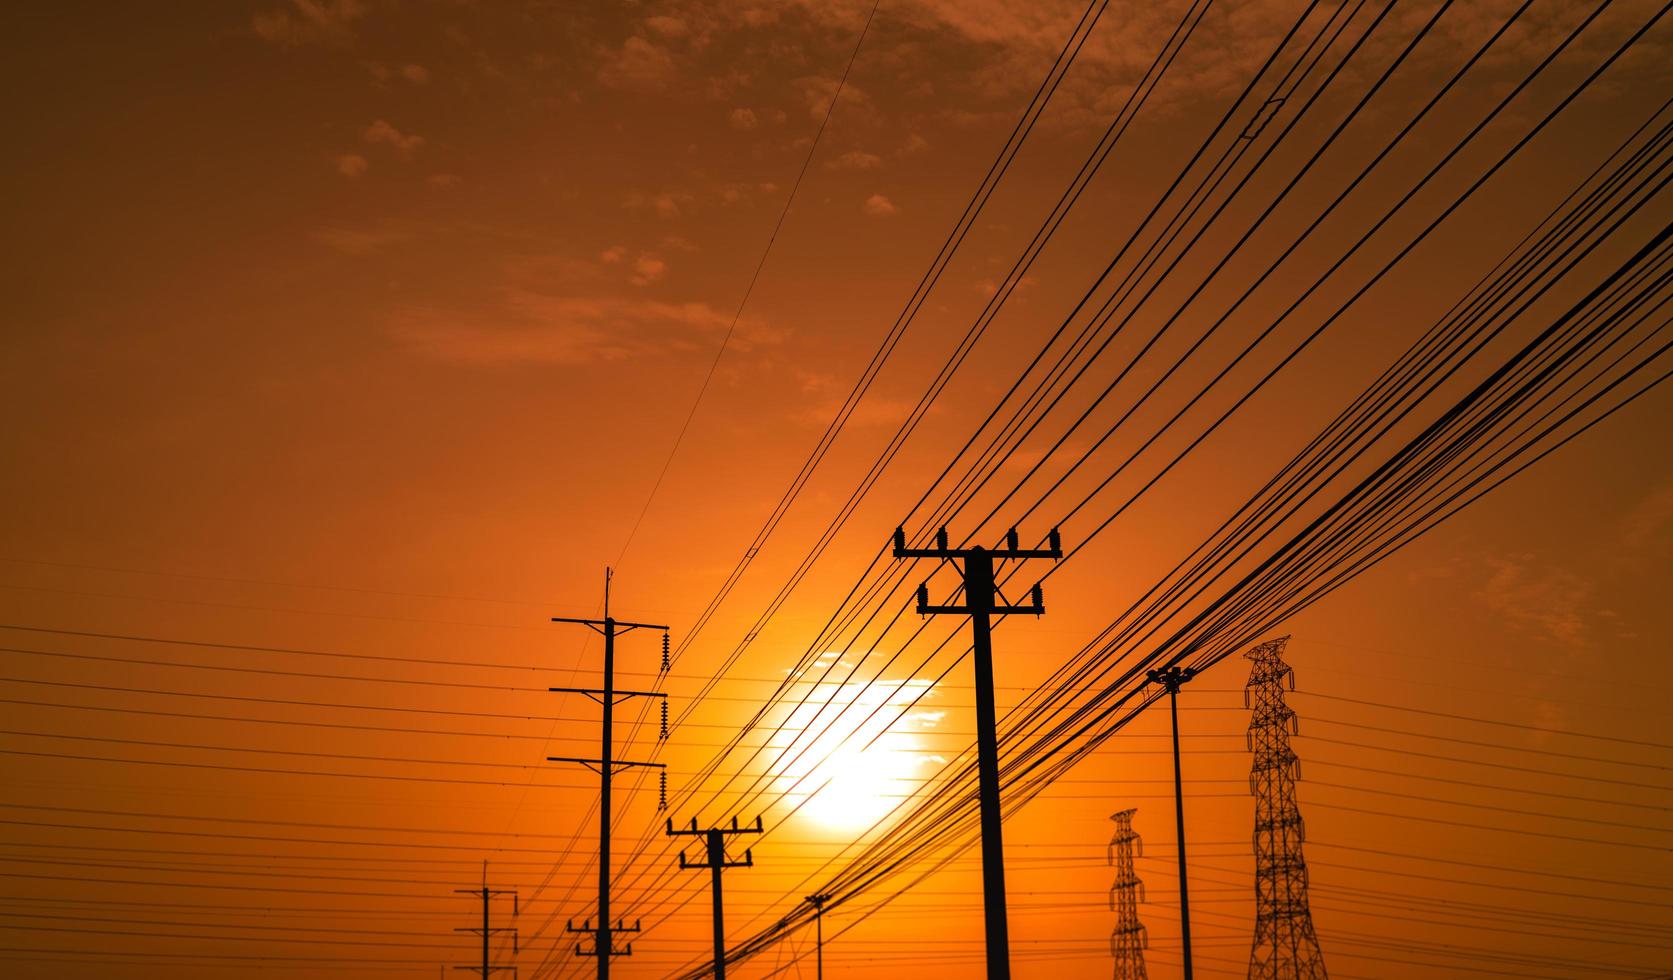 poste elétrico de alta tensão e linhas de transmissão ao pôr do sol com céu laranja e vermelho e nuvens. arquitetura. postes de eletricidade silhueta durante o pôr do sol. potência e energia. conservação de energia. foto